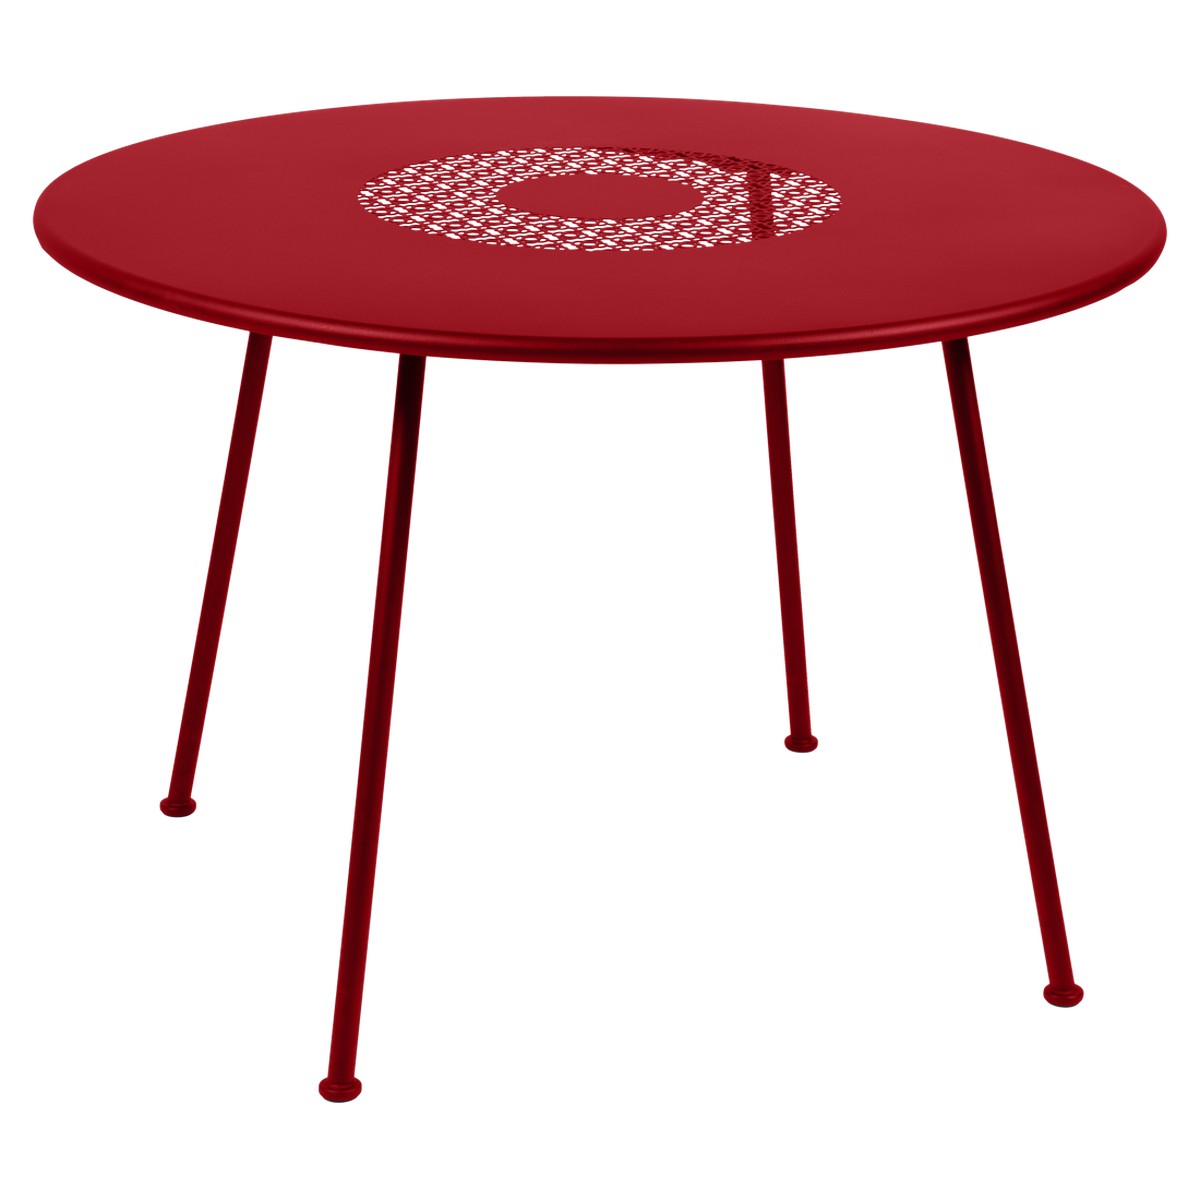 Fermob Lorette Table Lorette ronde Rouge cerise L 110 x l 110 x H74cm Diam : 110